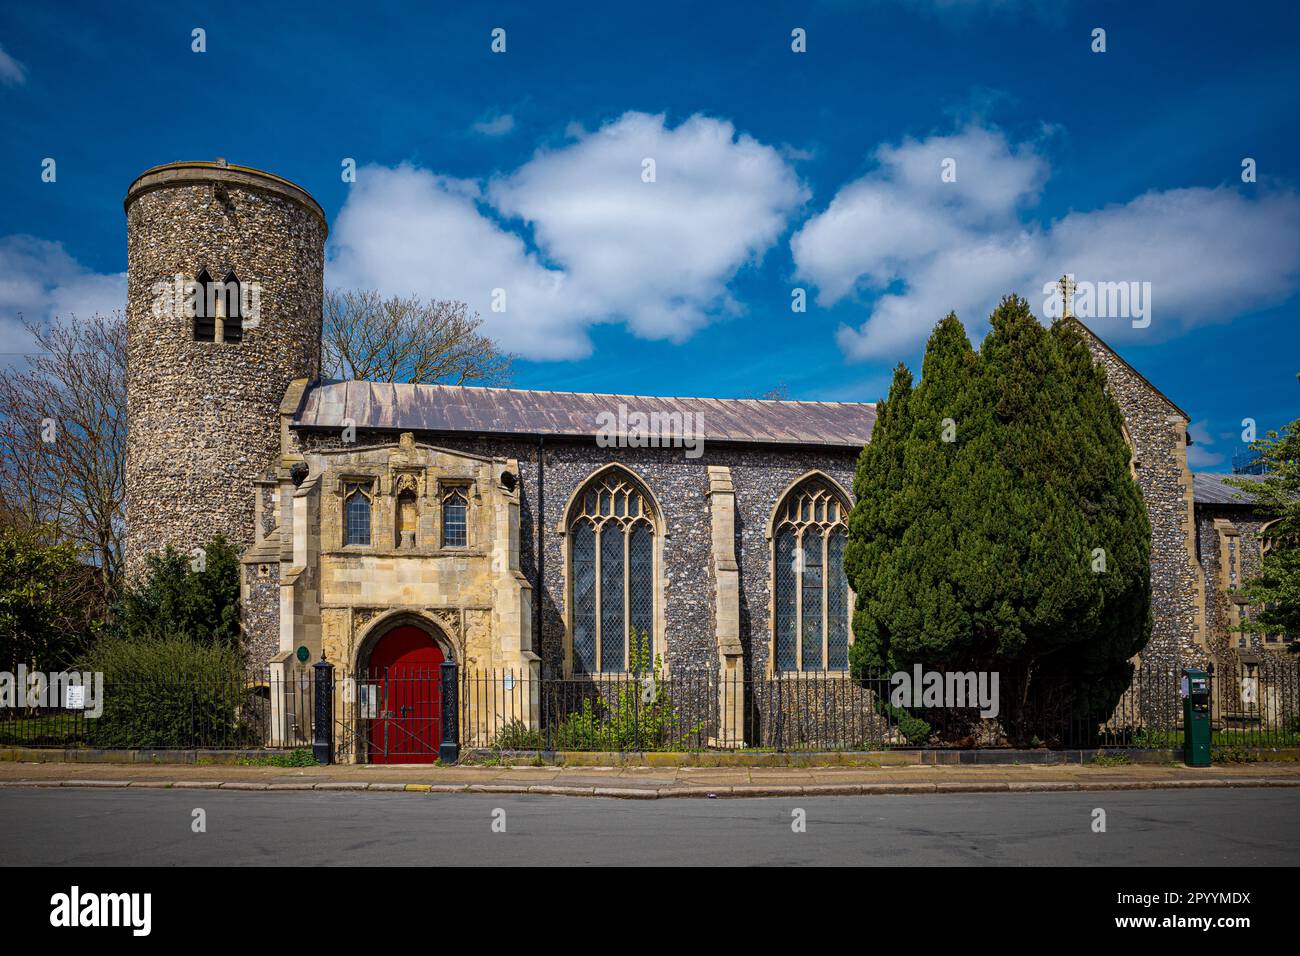 St. Mary Coslany Kirche Norwich. St. Mary Coslany ist die letzte noch erhaltene, runde, hochaufragte Kirche aus dem Mittelalter in Norwich. Der Turm stammt aus dem 12. Jahrhundert. Stockfoto